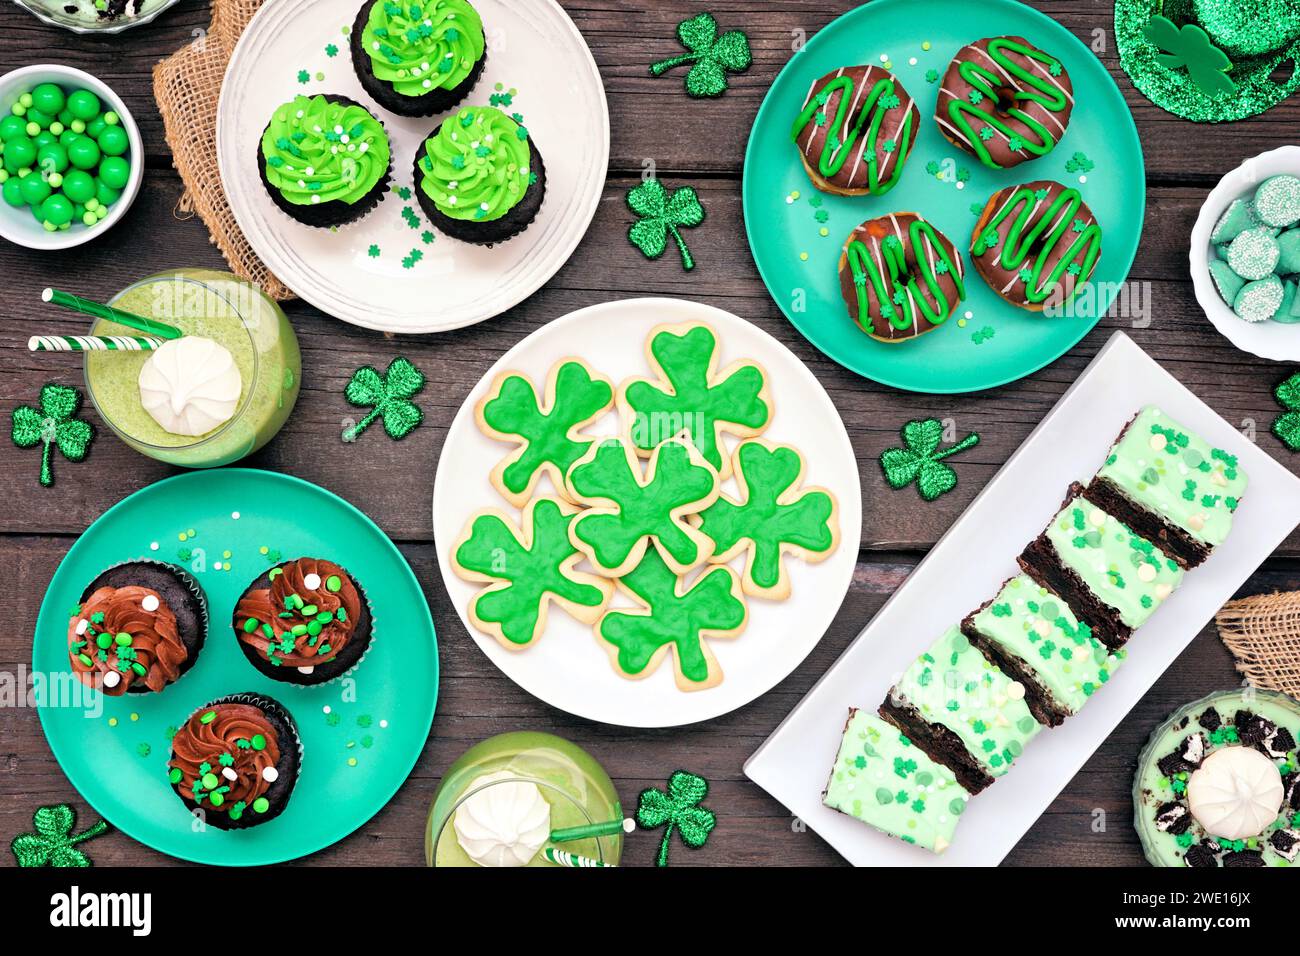 Desserts zum St. Patricks Day. Tischszene auf dunklem Holzhintergrund. Shamrock-Kekse, grüne Cupcakes, Brownies, Donuts und Süßigkeiten. Ansicht oben. Stockfoto